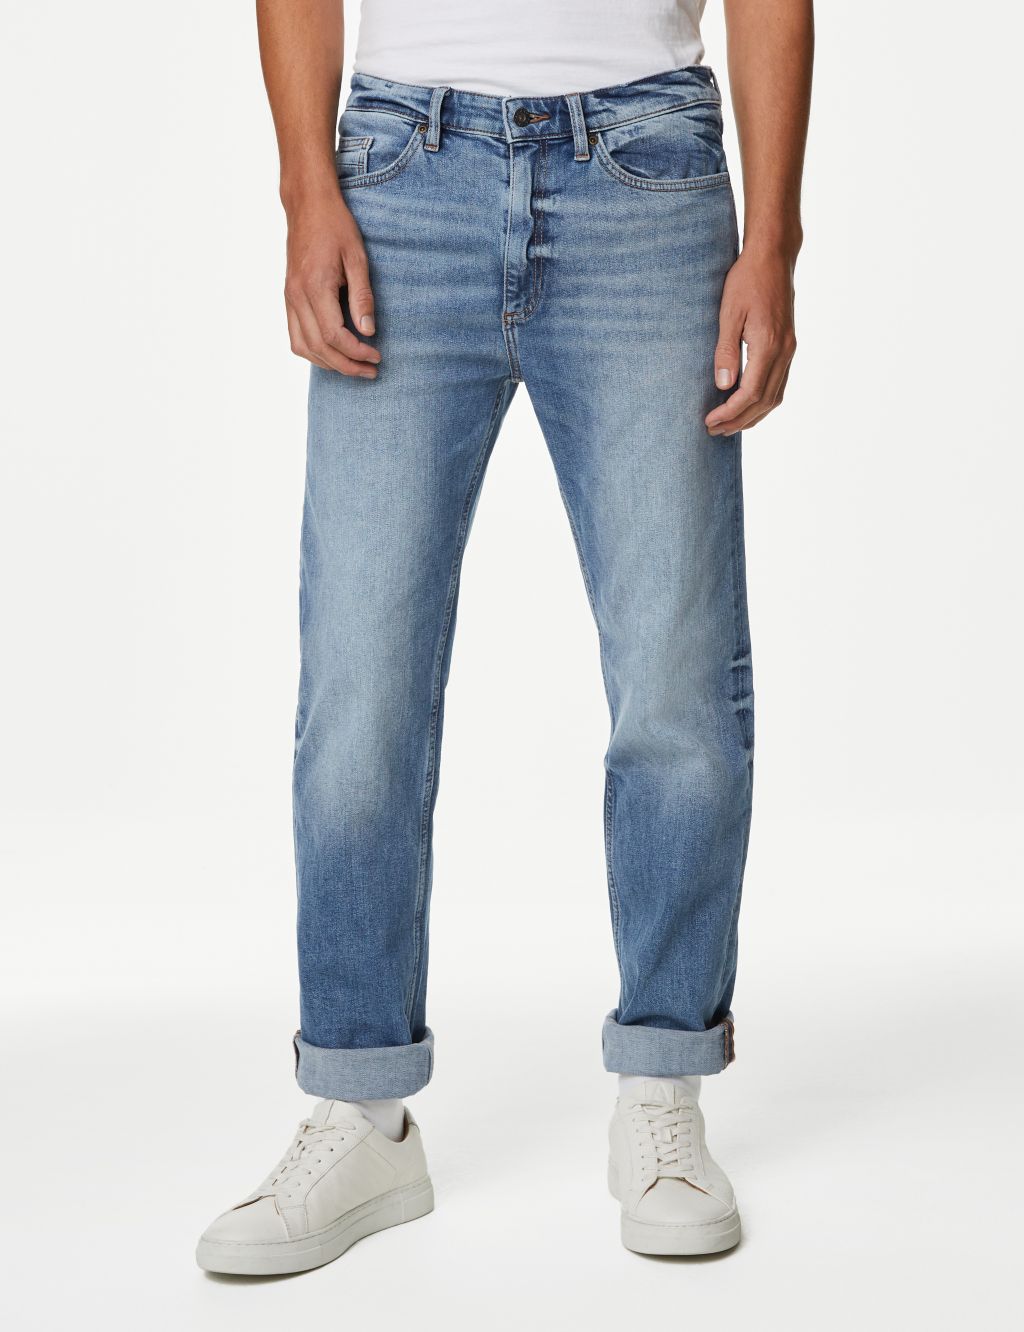 Men’s Loose-Fit Jeans | M&S